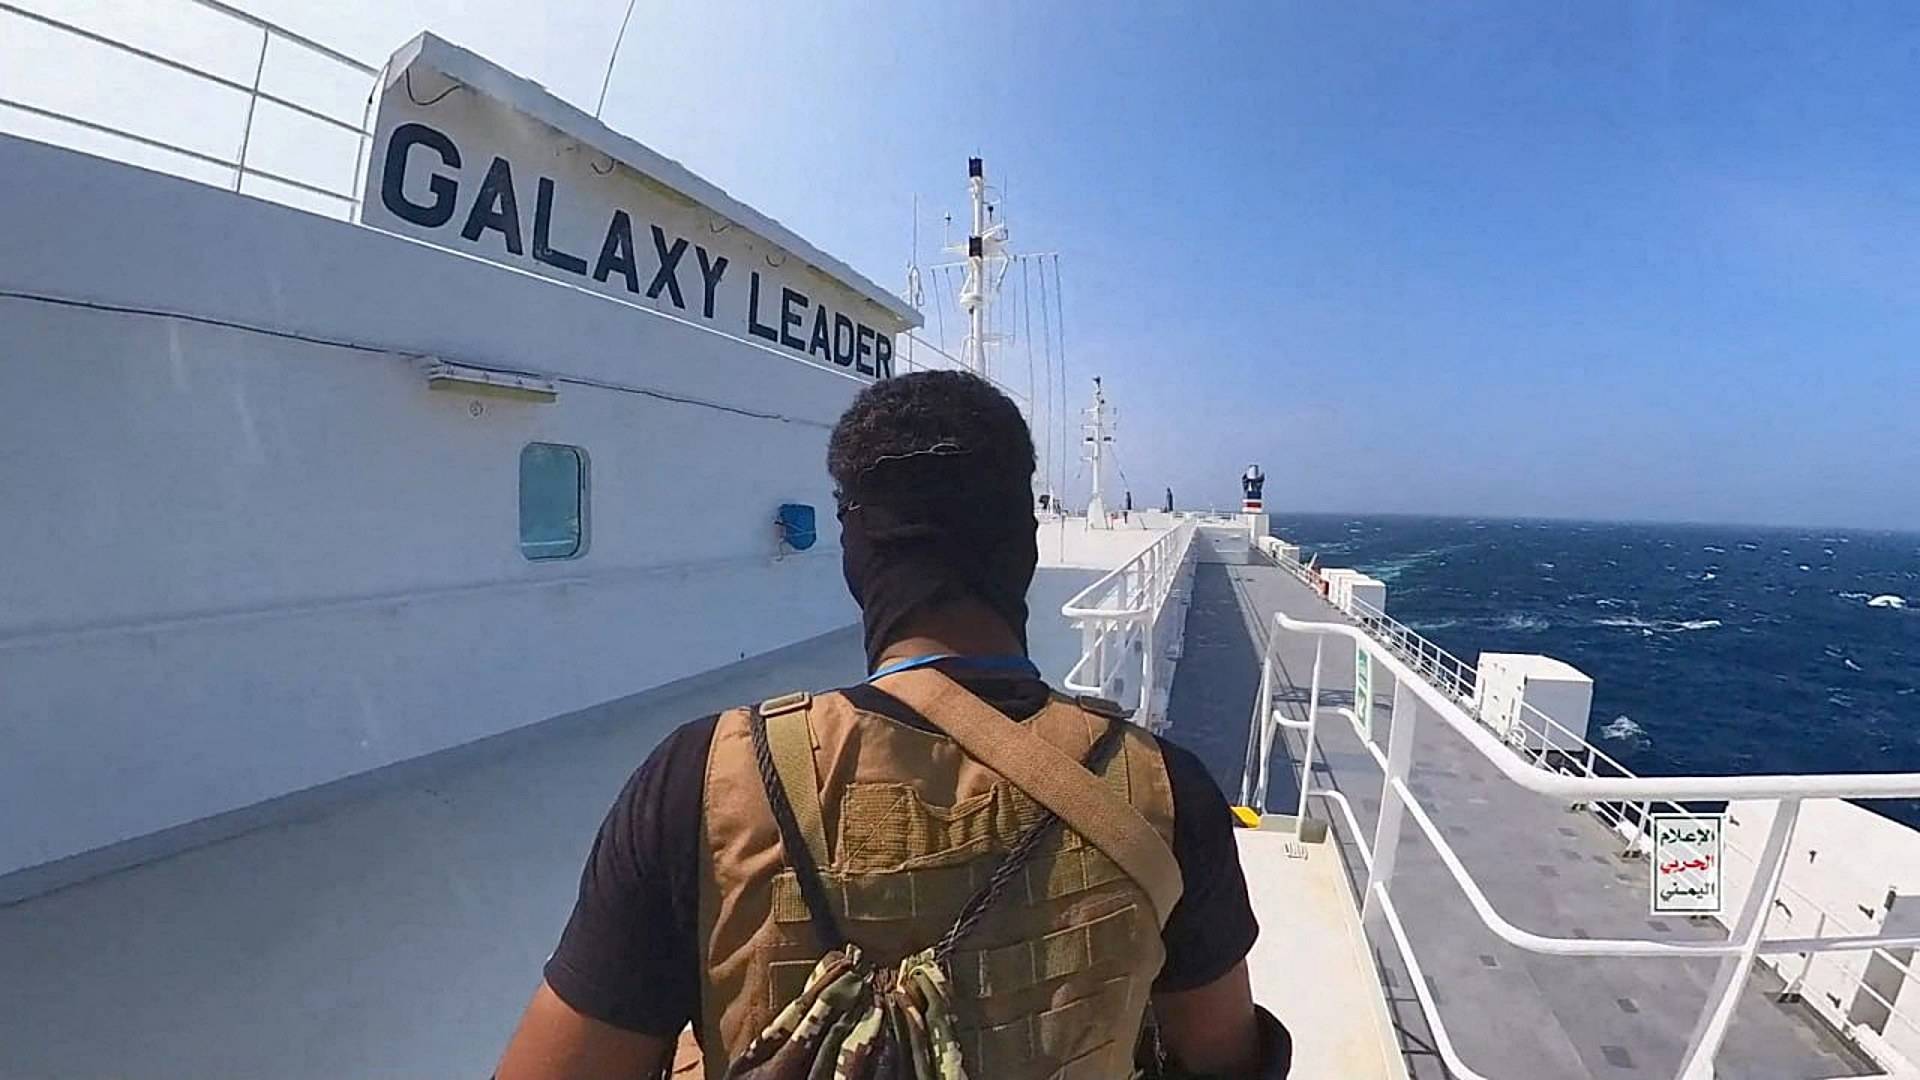 Muestran imágenes de secuestro del carguero Galaxy Leader en el Mar Rojo